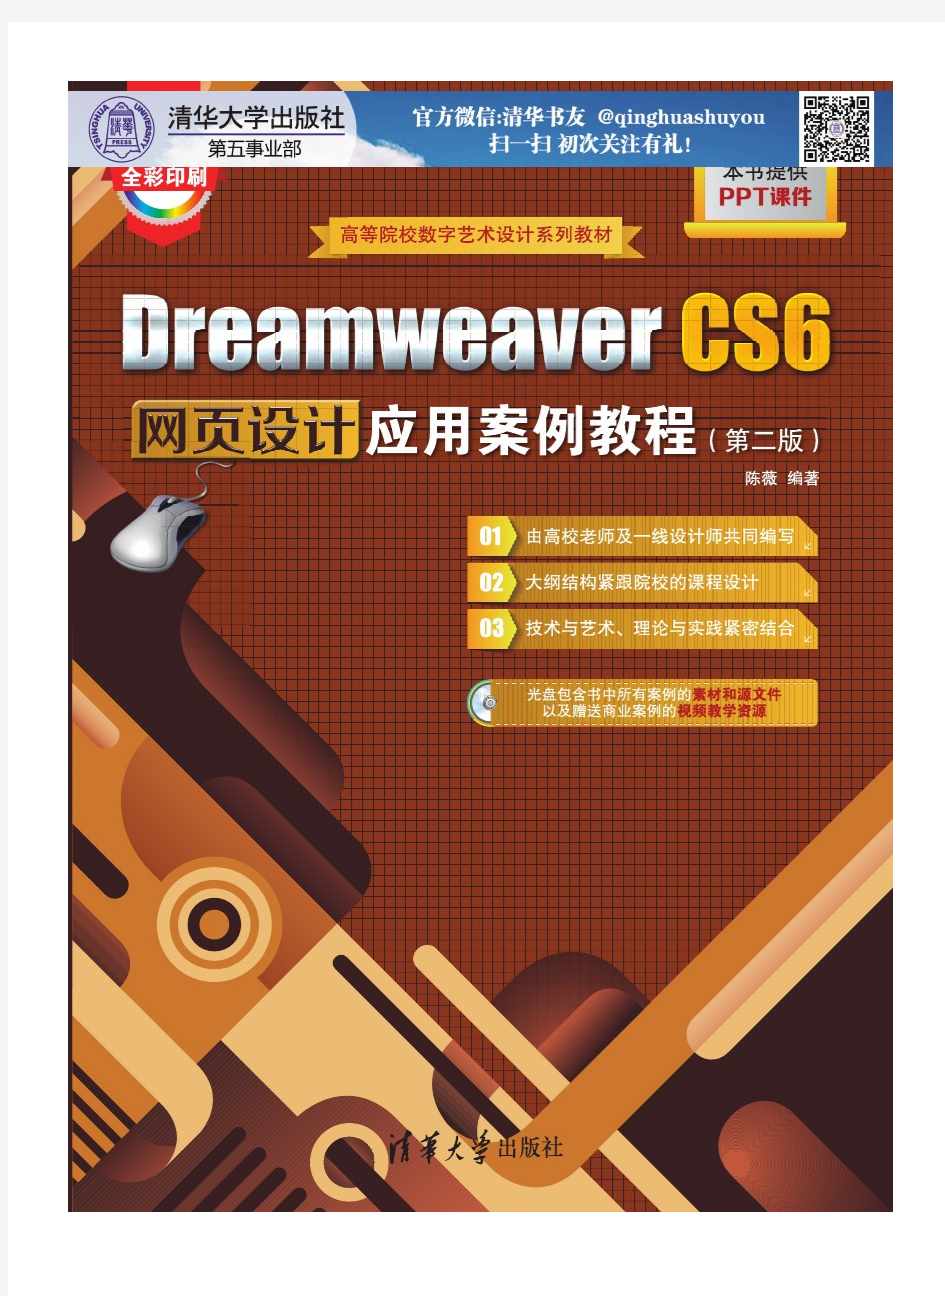 Dreamweaver CS6网页设计应用案例教程(第二版)-sy